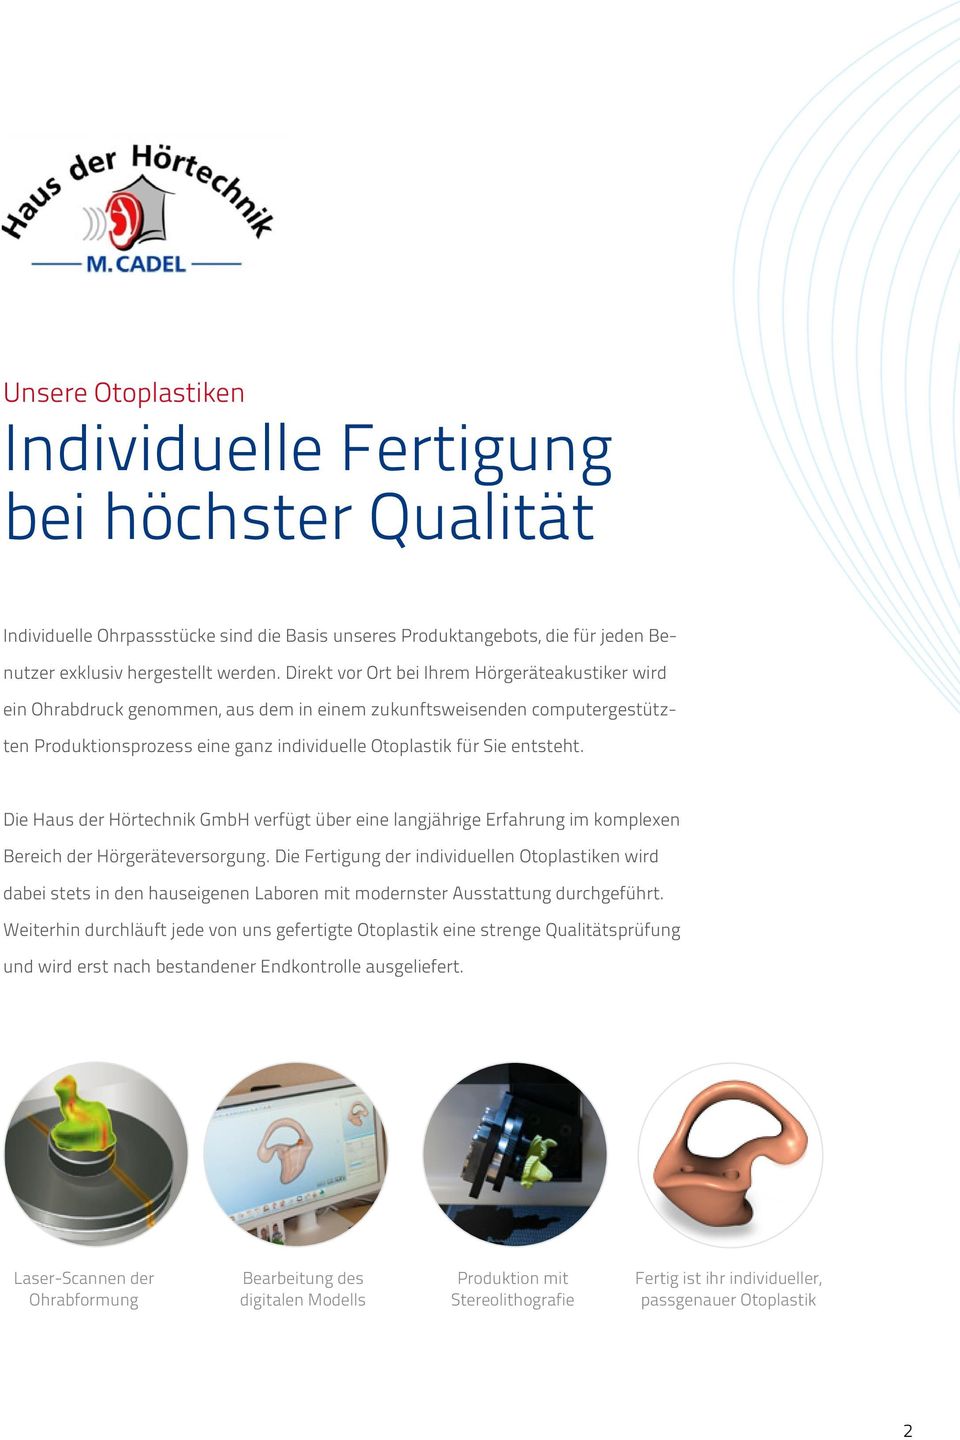 Die Haus der Hörtechnik GmbH verfügt über eine langjährige Erfahrung im komplexen Bereich der Hörgeräteversorgung.